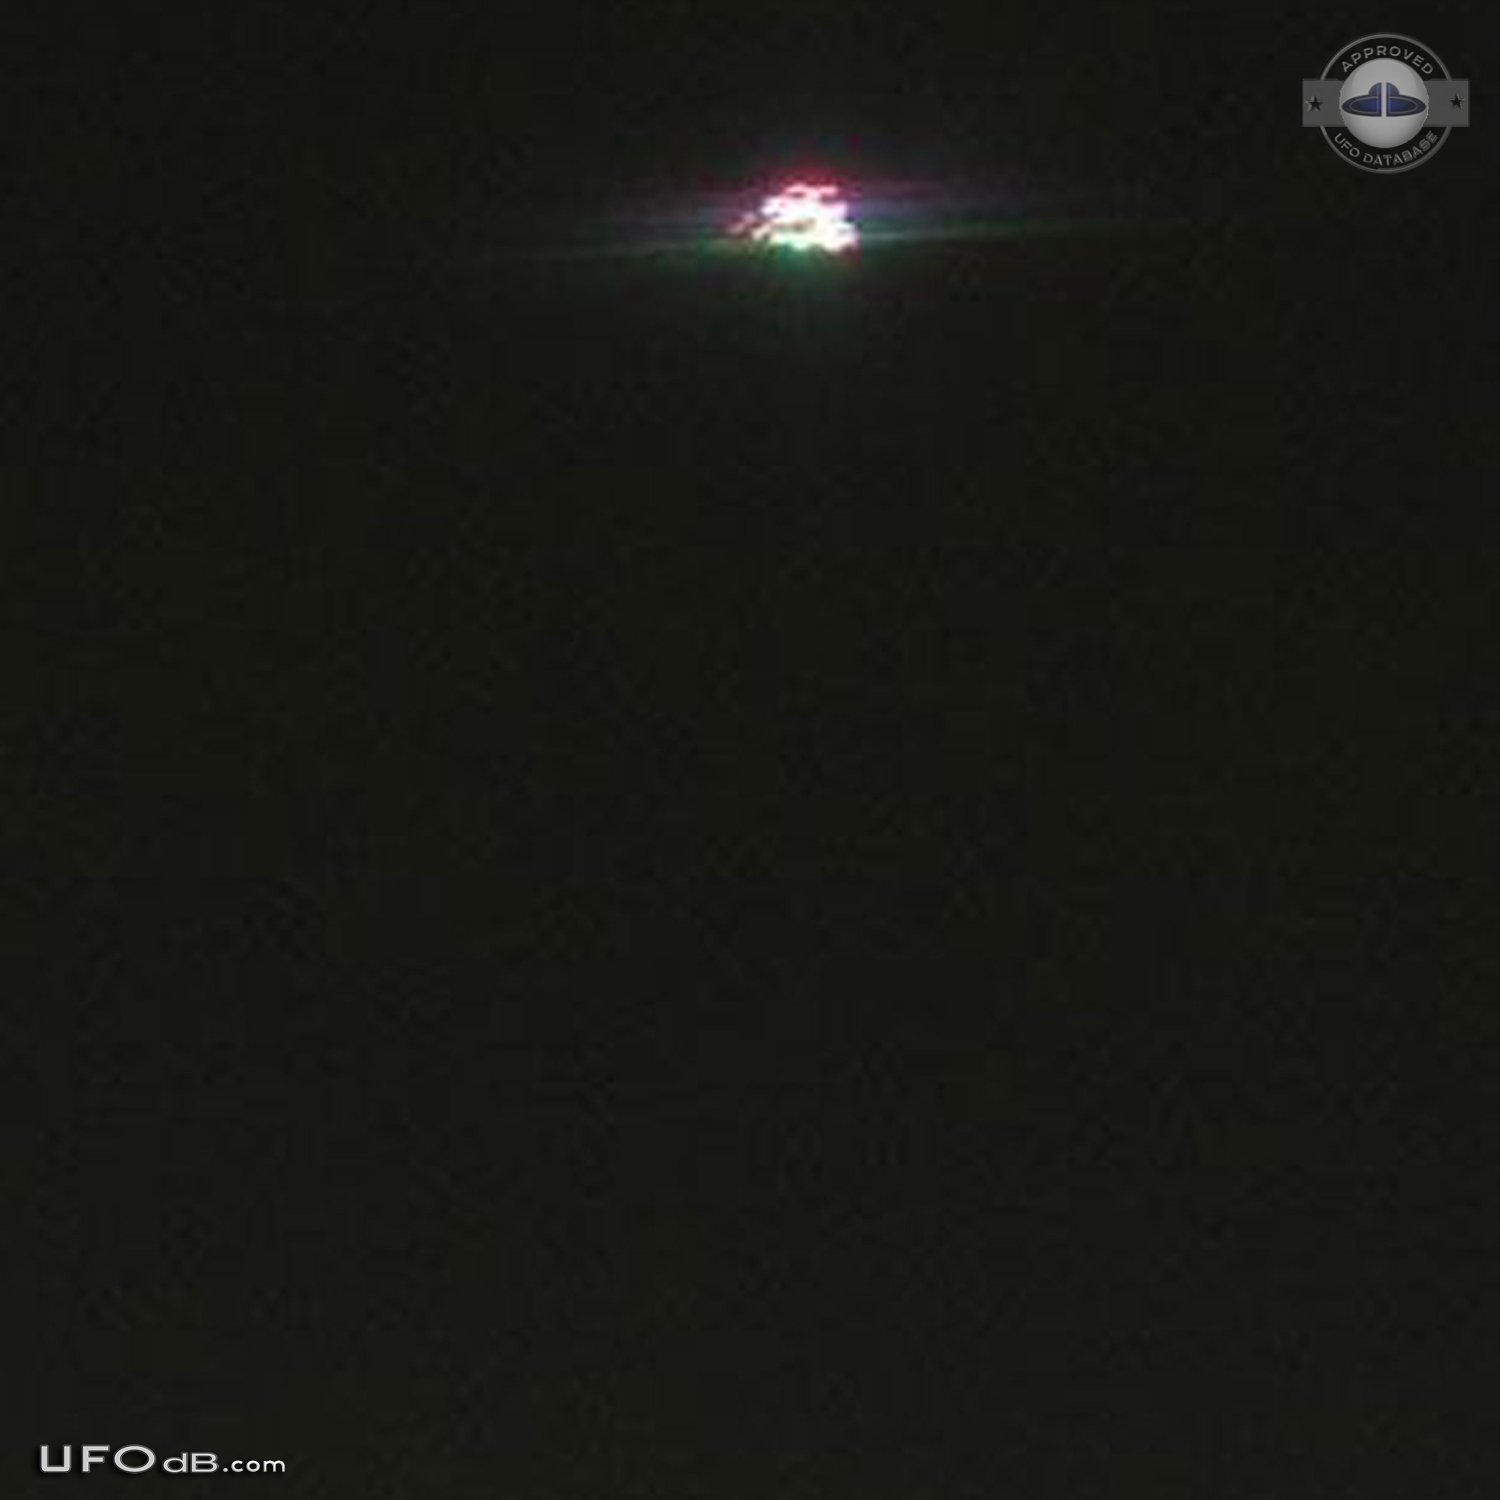 Mass UFO sightings of a Fleet of UFOs pass over Izumi Osaka Japan 2012 UFO Picture #488-2